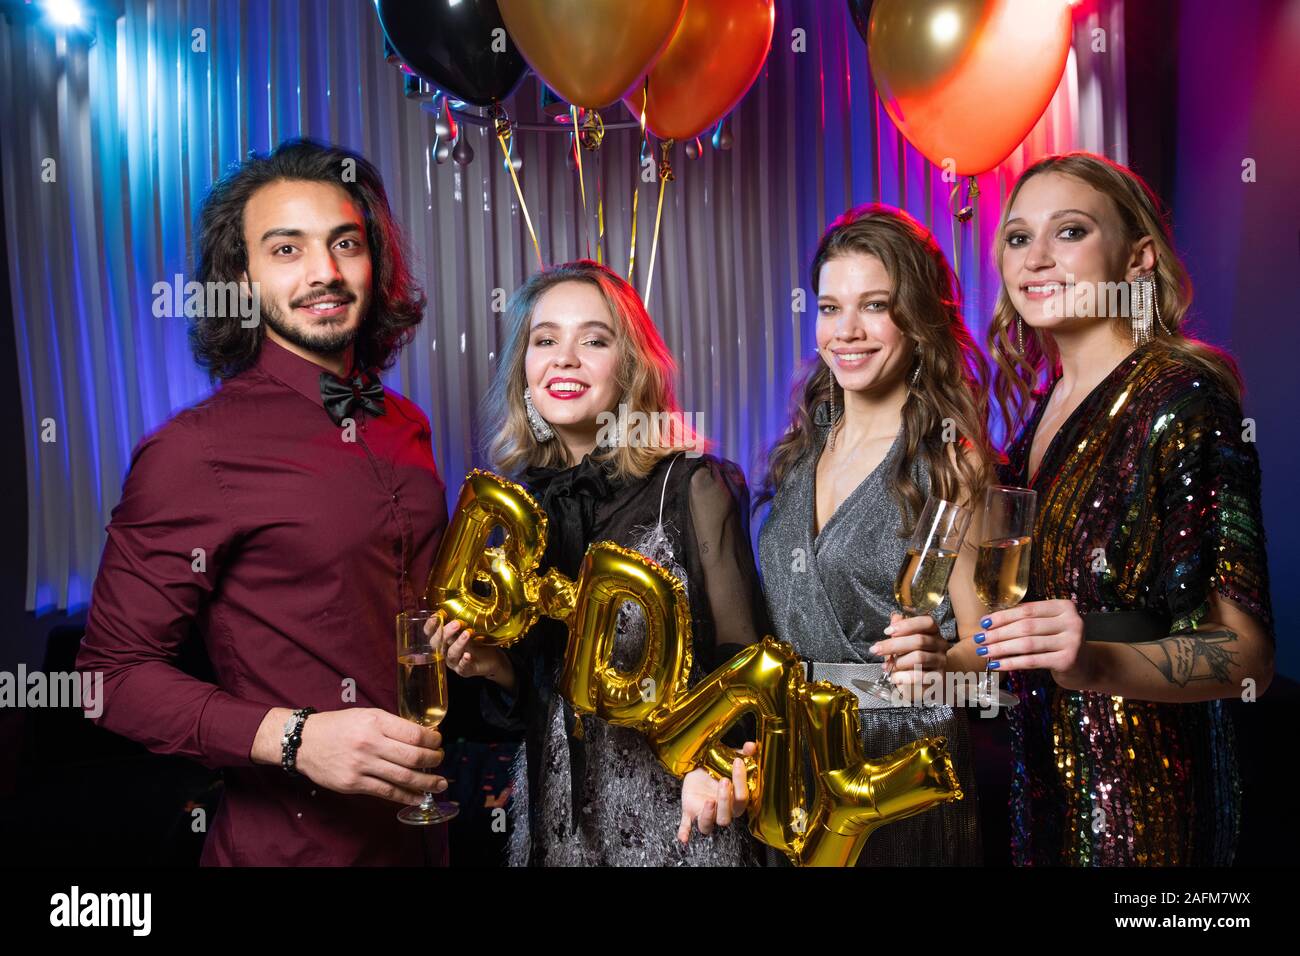 Trois filles heureuse et young man holding flutes de champagne et des ballons Banque D'Images